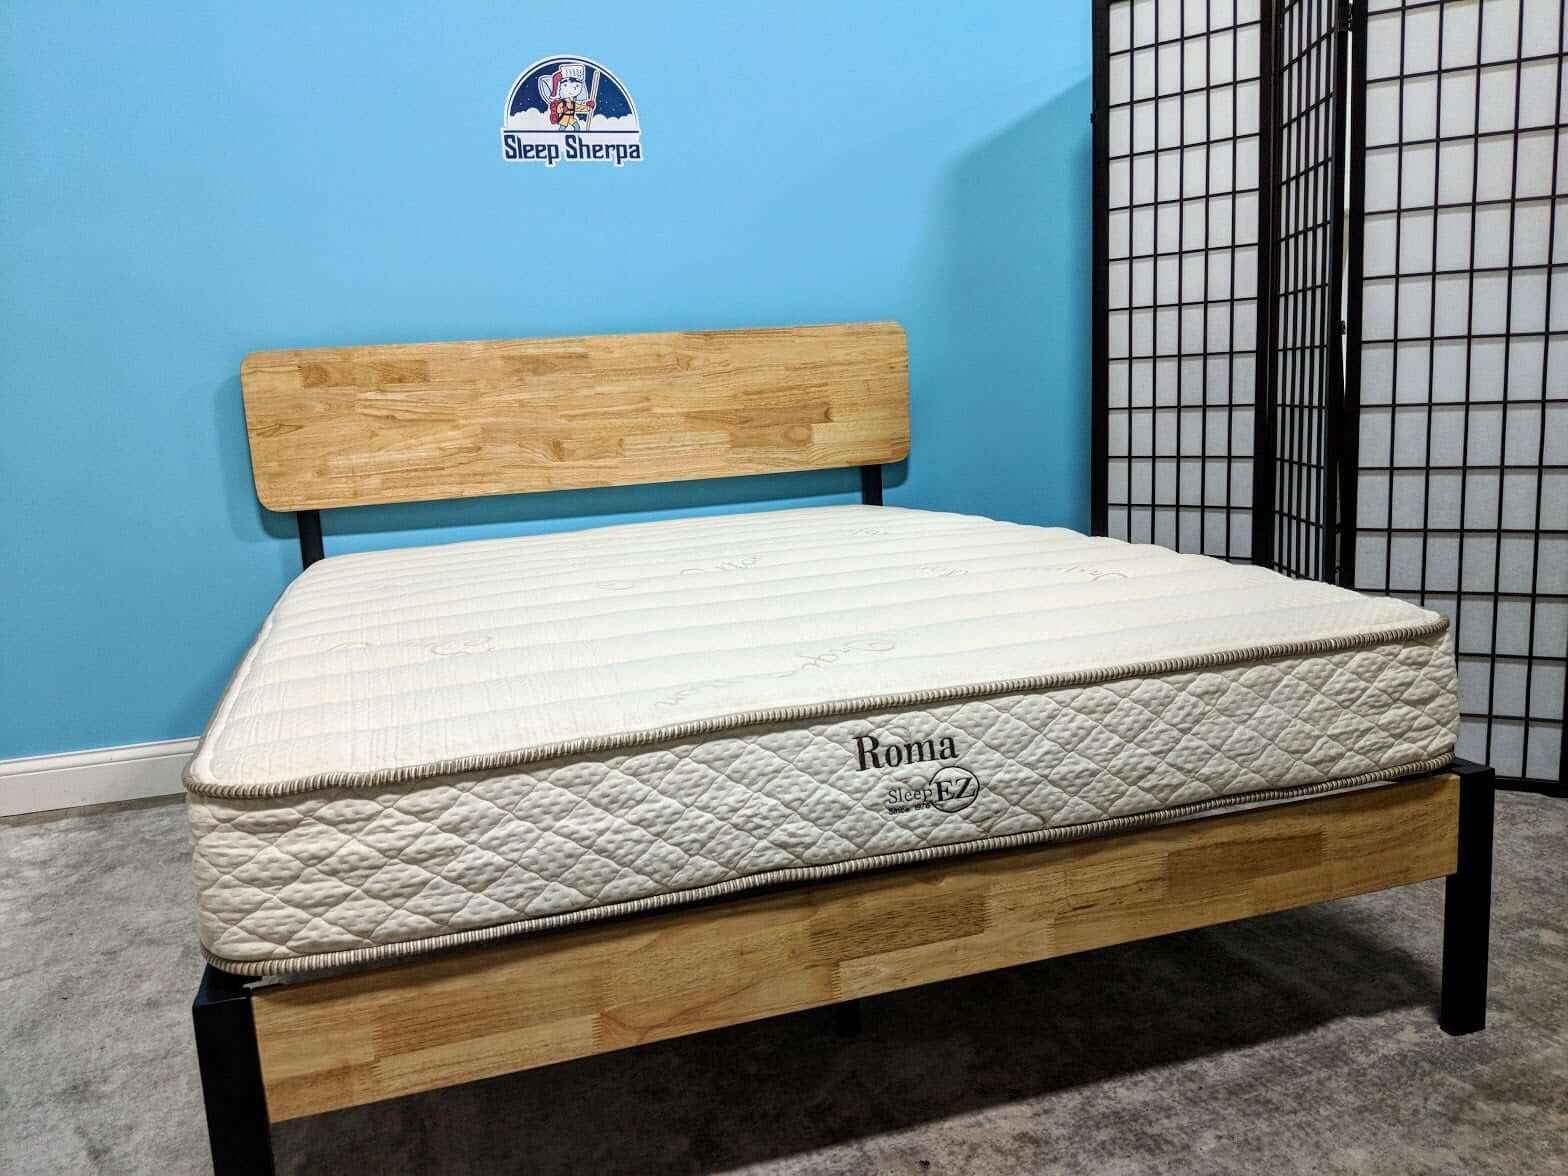 sleep ez roma mattress review